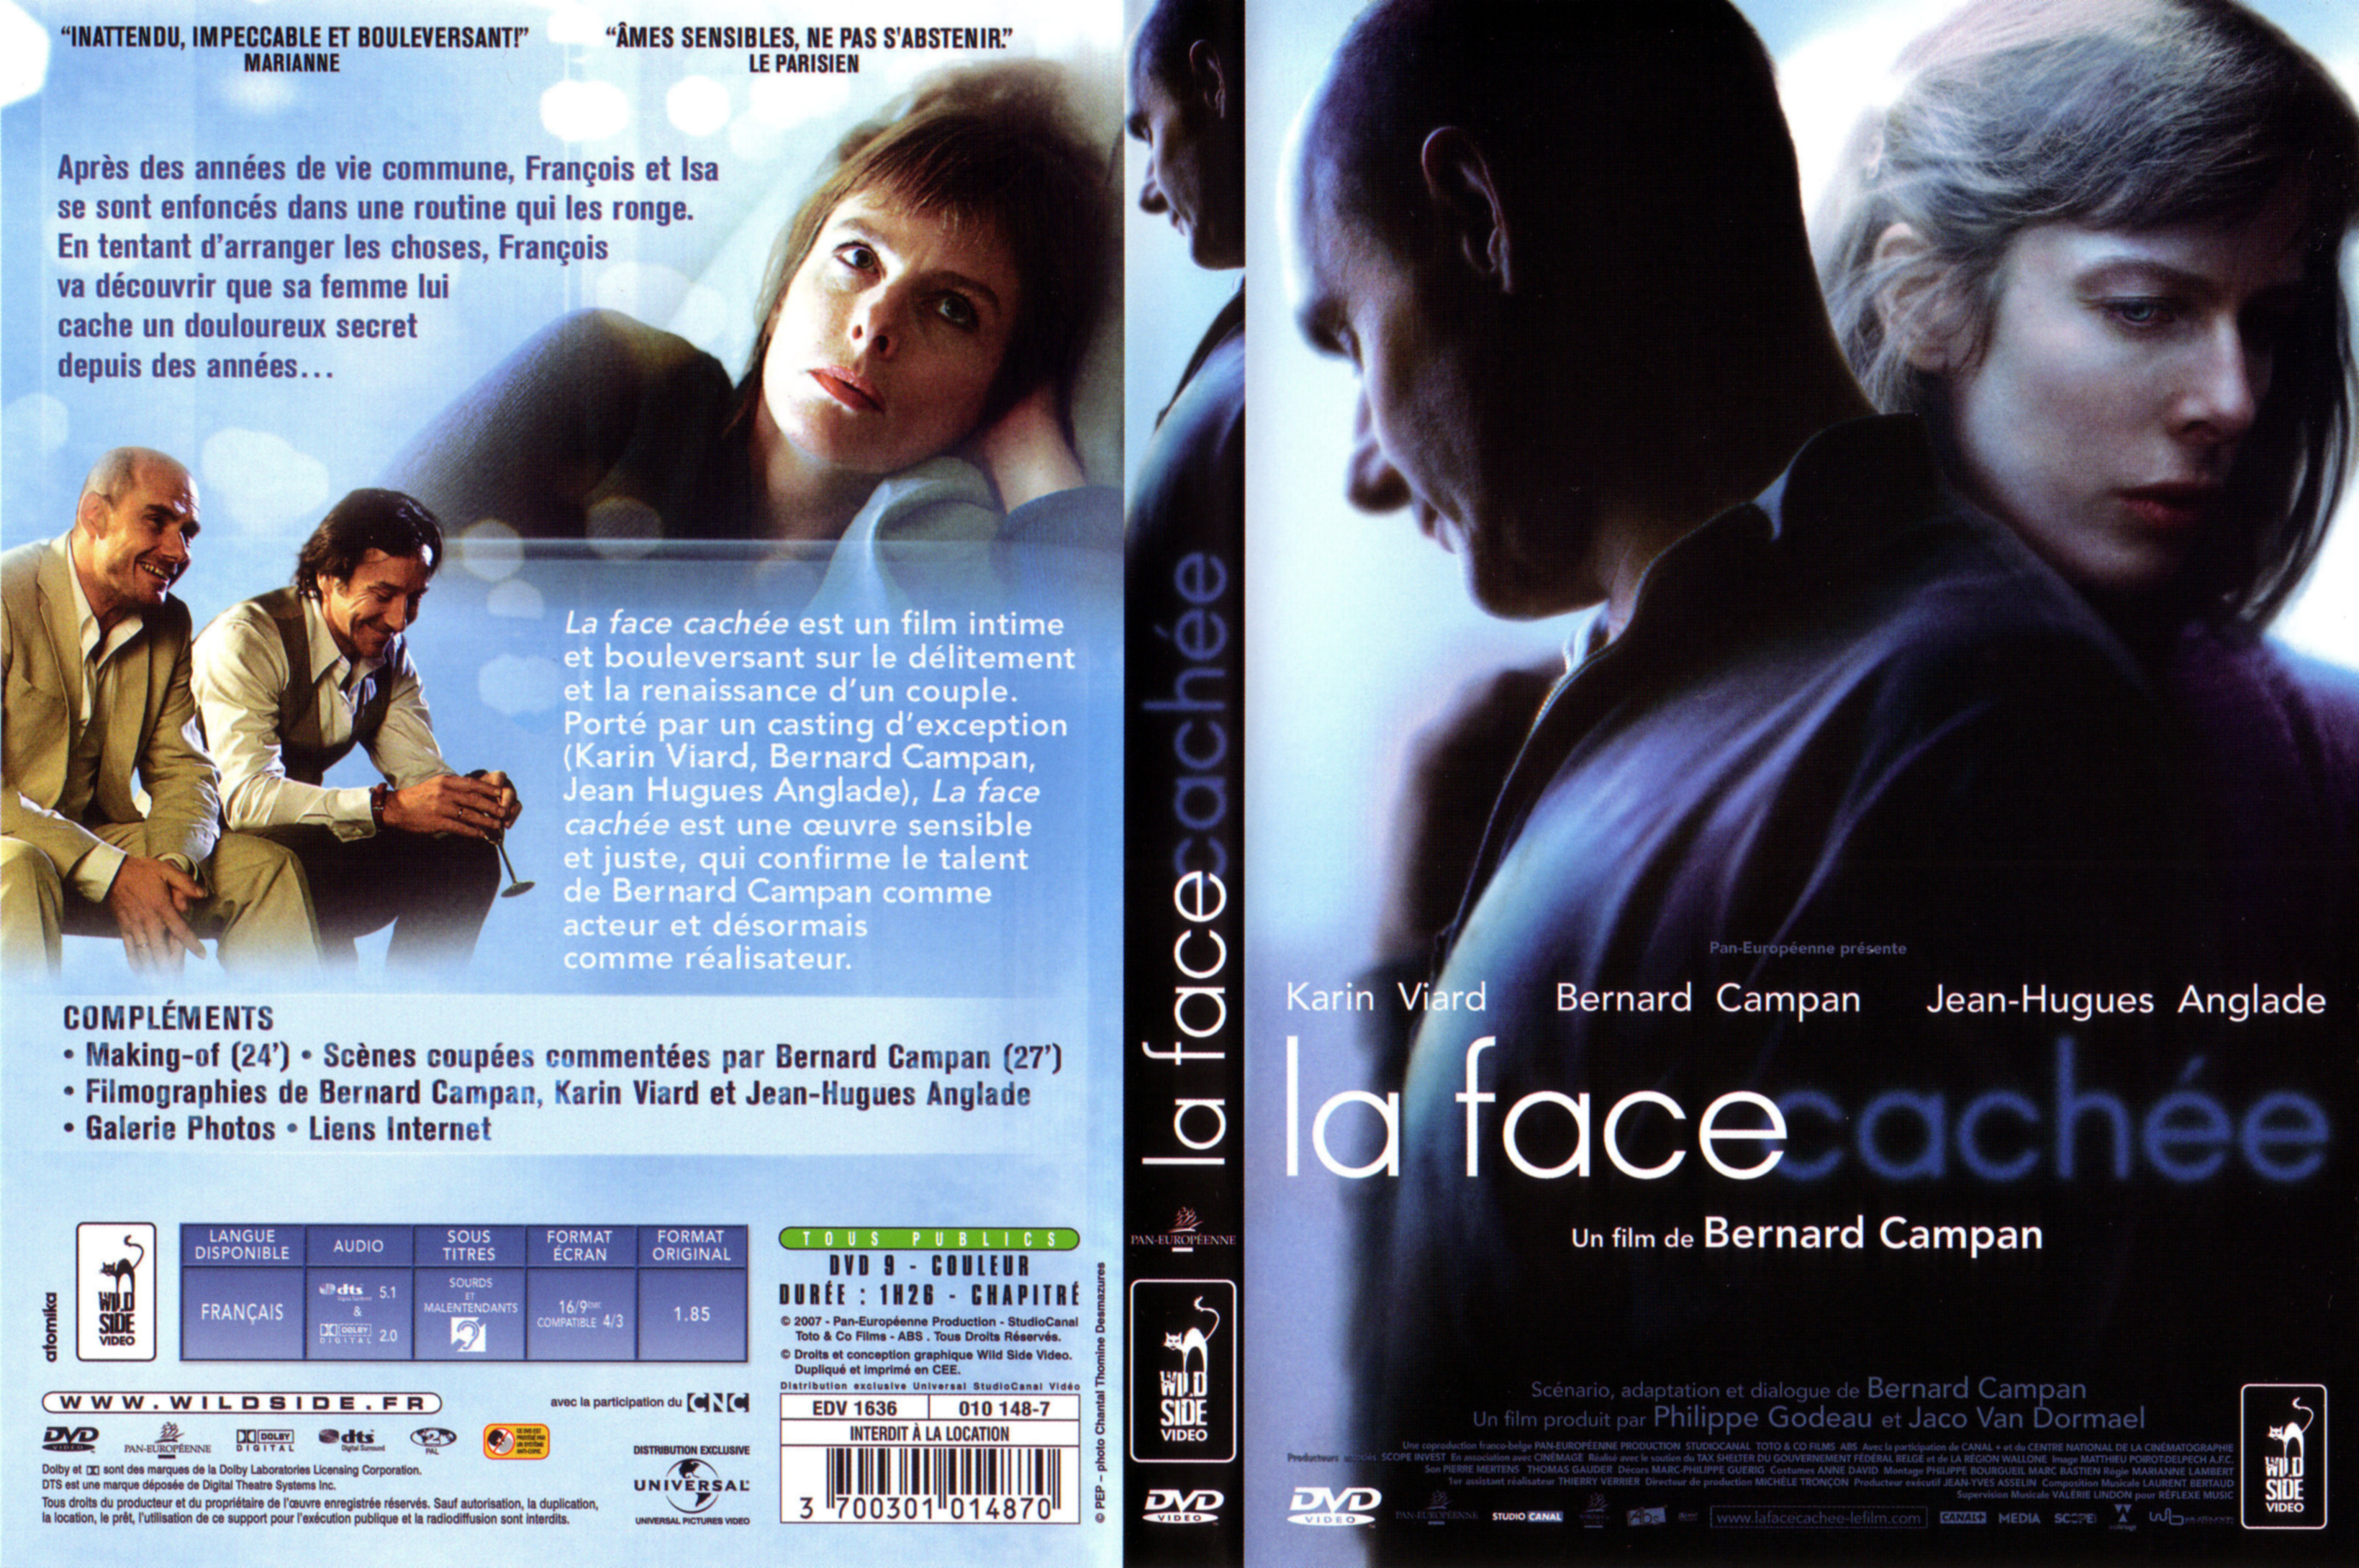 Jaquette DVD La face cache